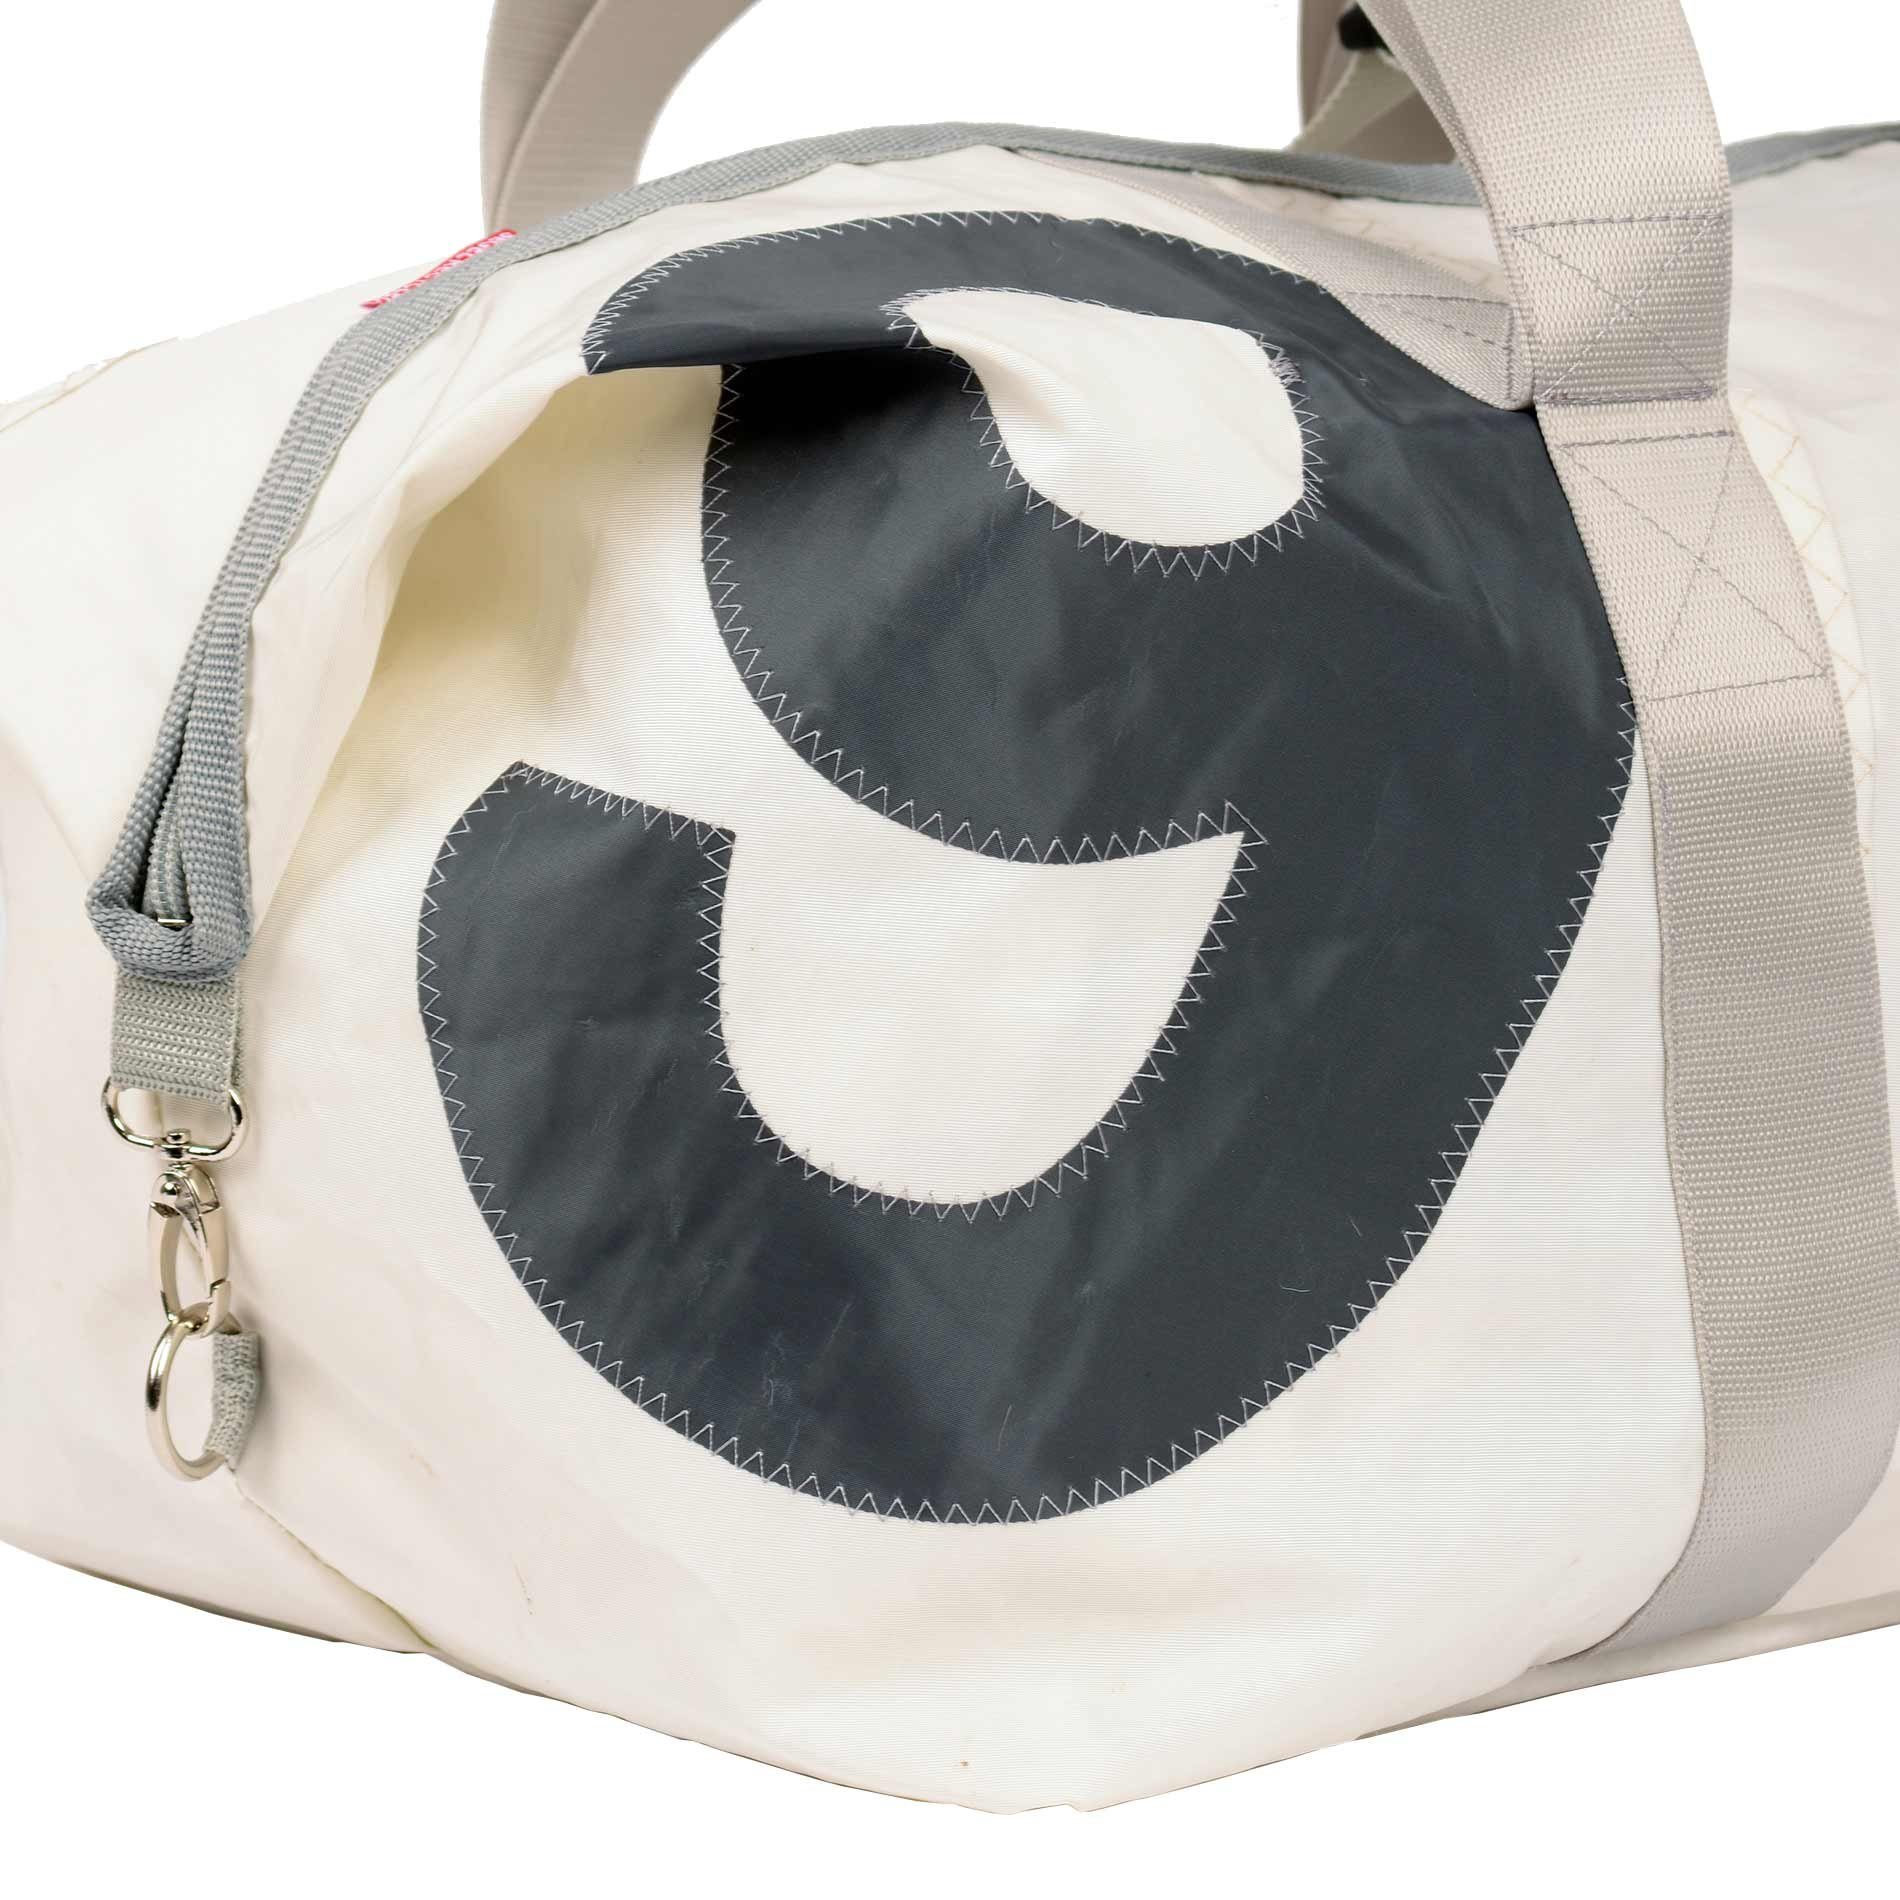 360Grad Reisetasche Reisetasche 3 Gurte Grau Weiss recyceltes Kutter Segeltuch von XL Zahl